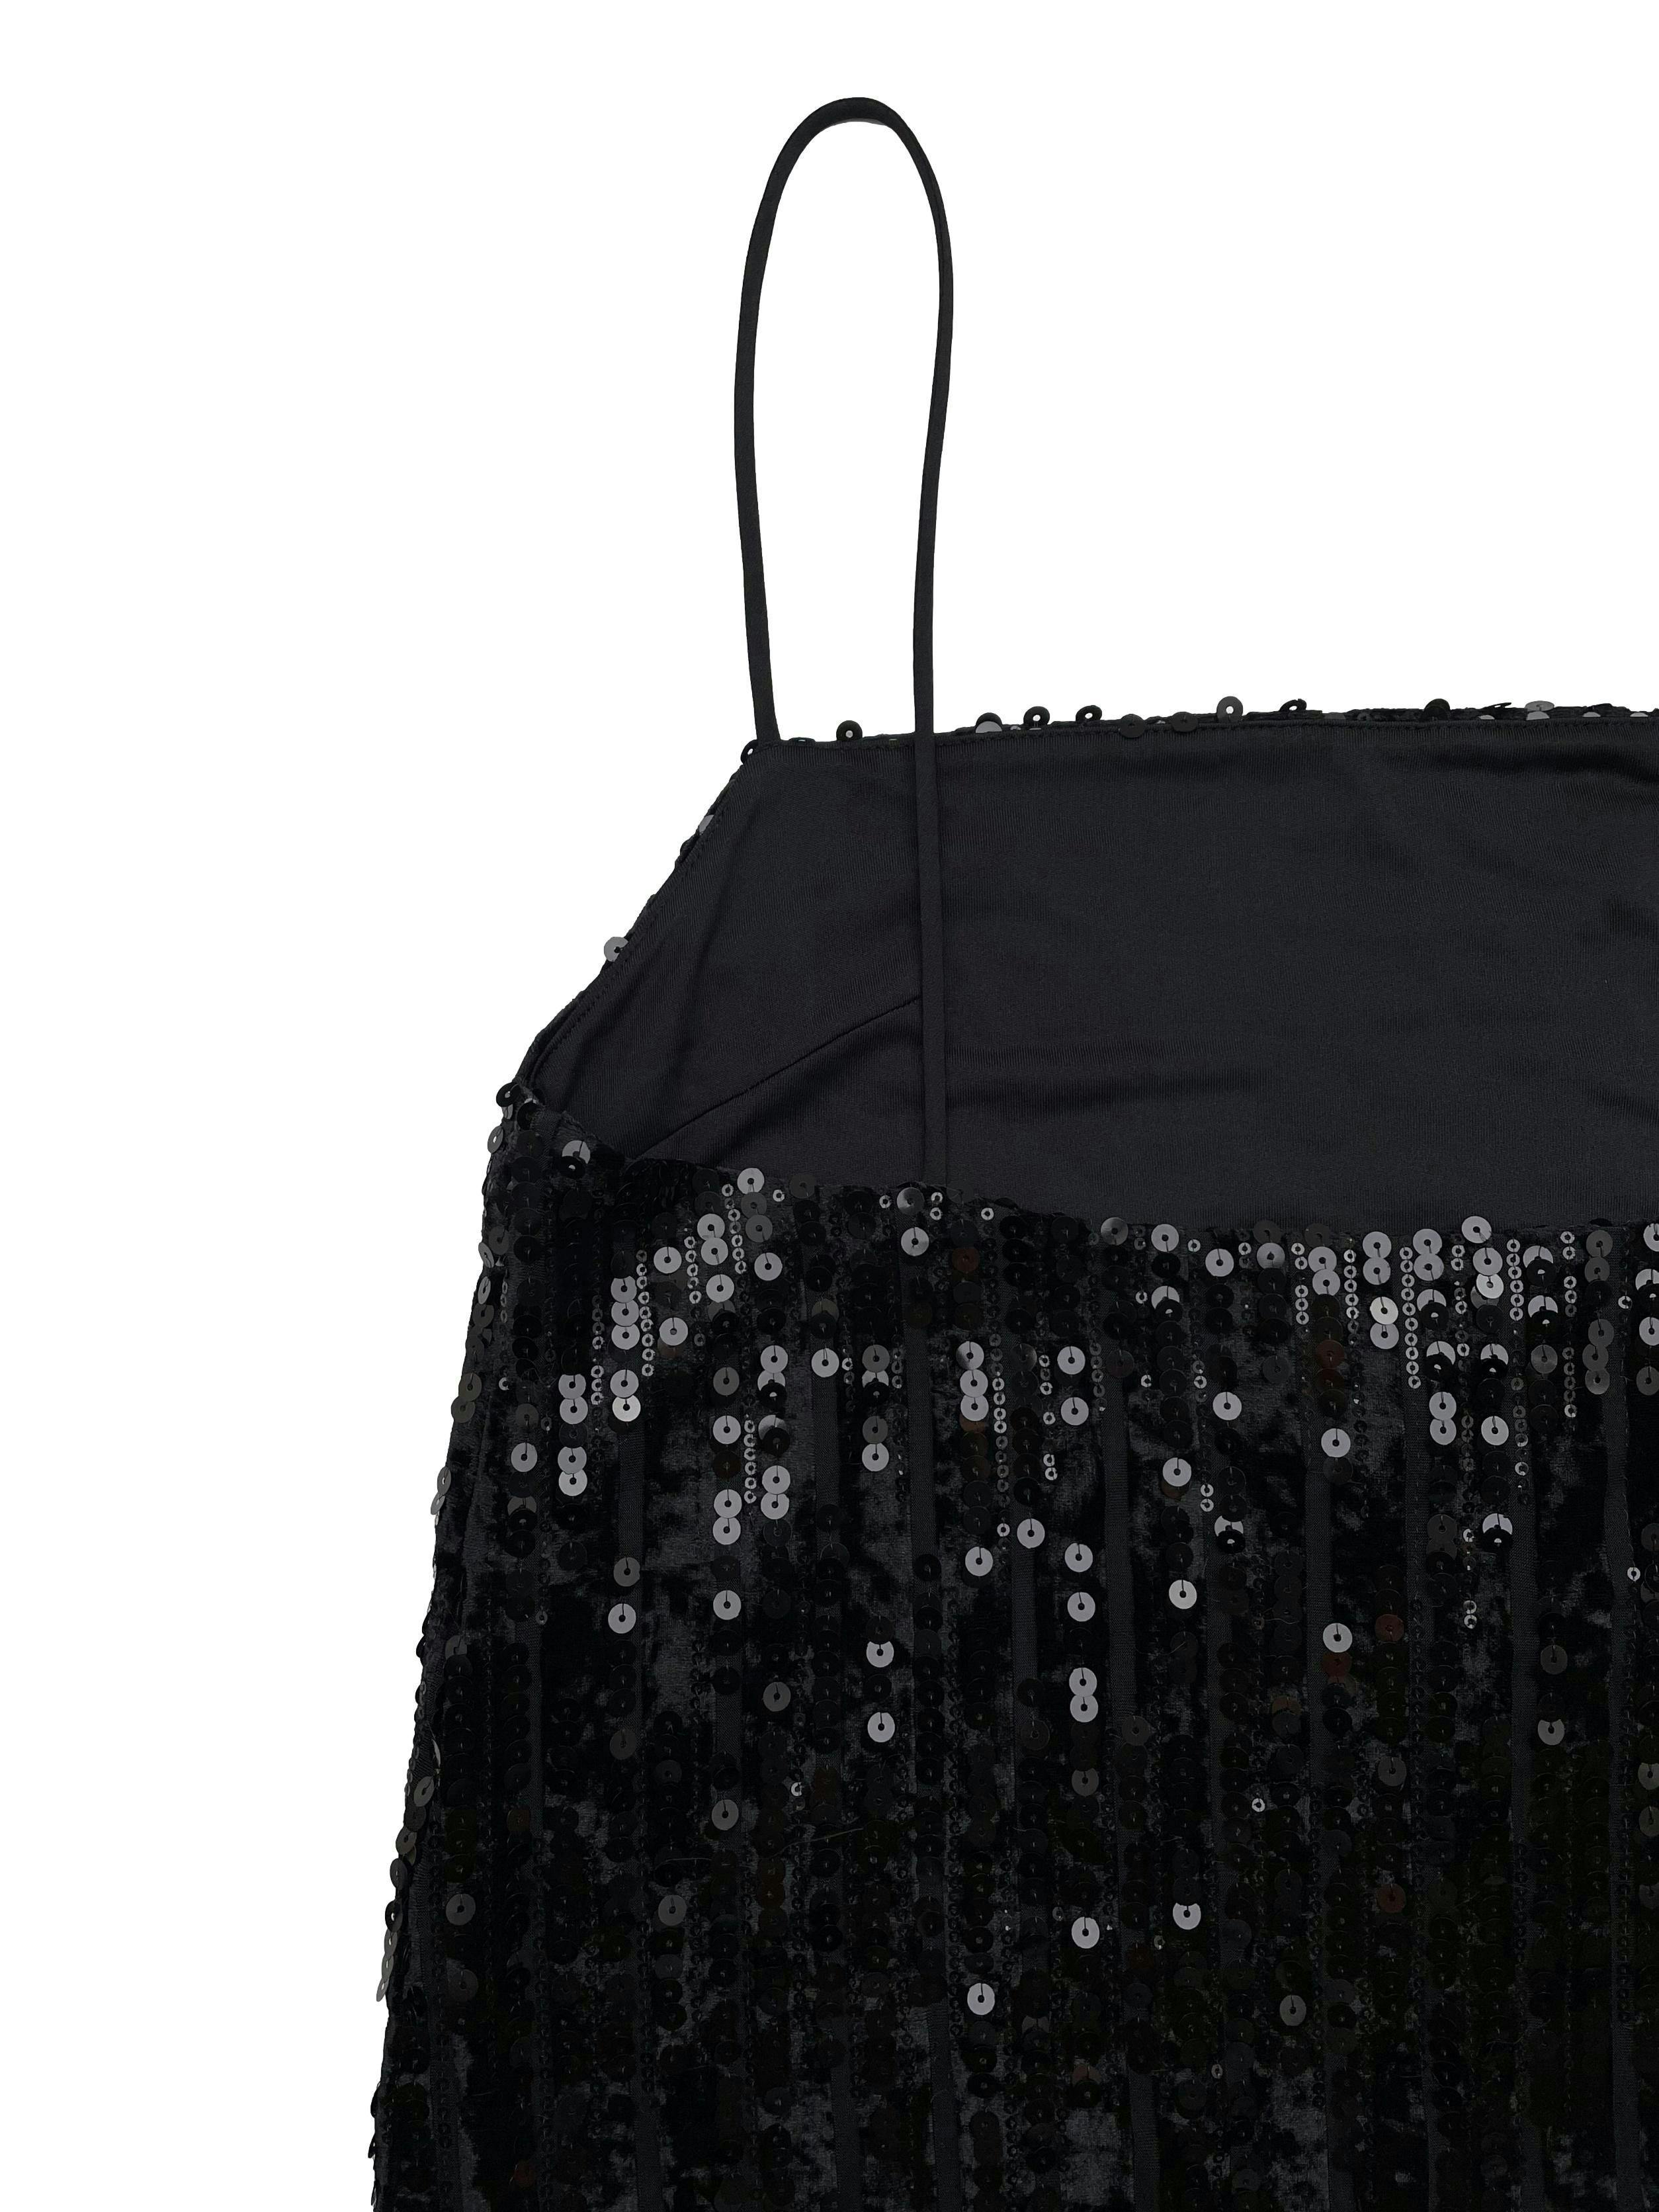 Vestido H&M de mesh negro con franjas de plush y mostacillas, forrado. Busto 90cm Largo 88cm